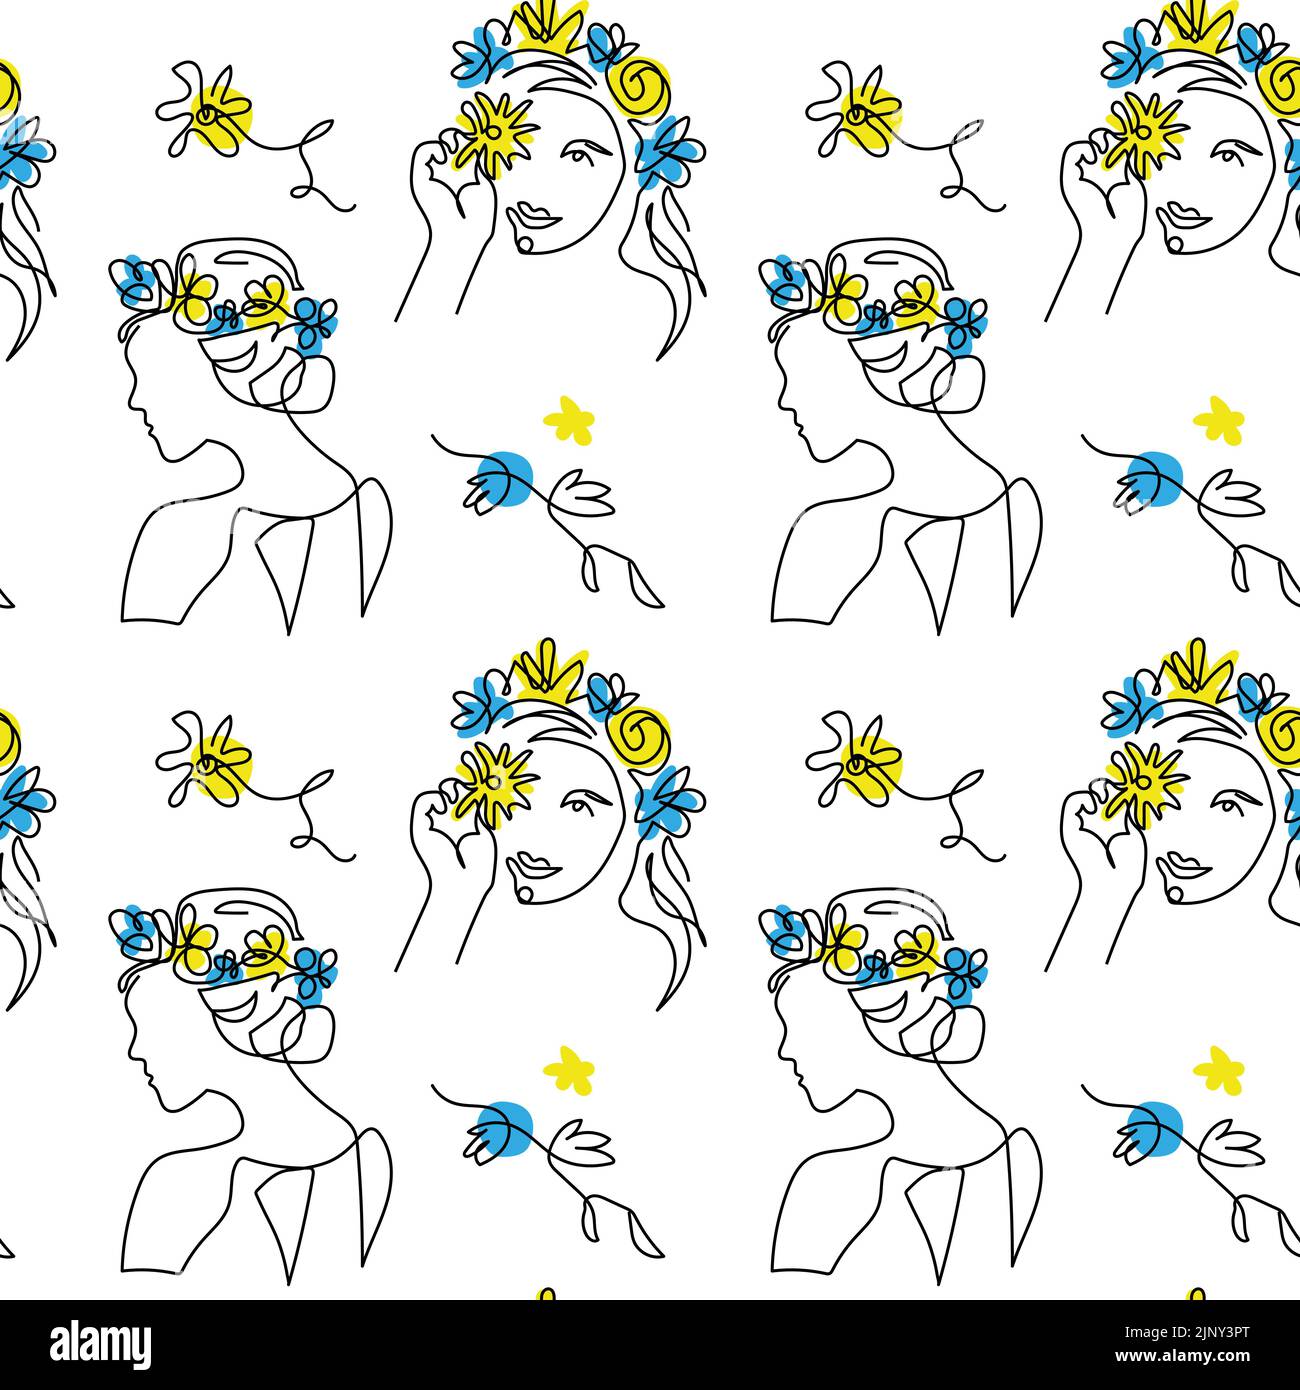 Kopf in Blumen Vektor-Muster. Eine fortlaufende Strichzeichnung. Blaue und gelbe Blumen im Kopf.Ukrainische Flagge. Frauengesicht Stock Vektor